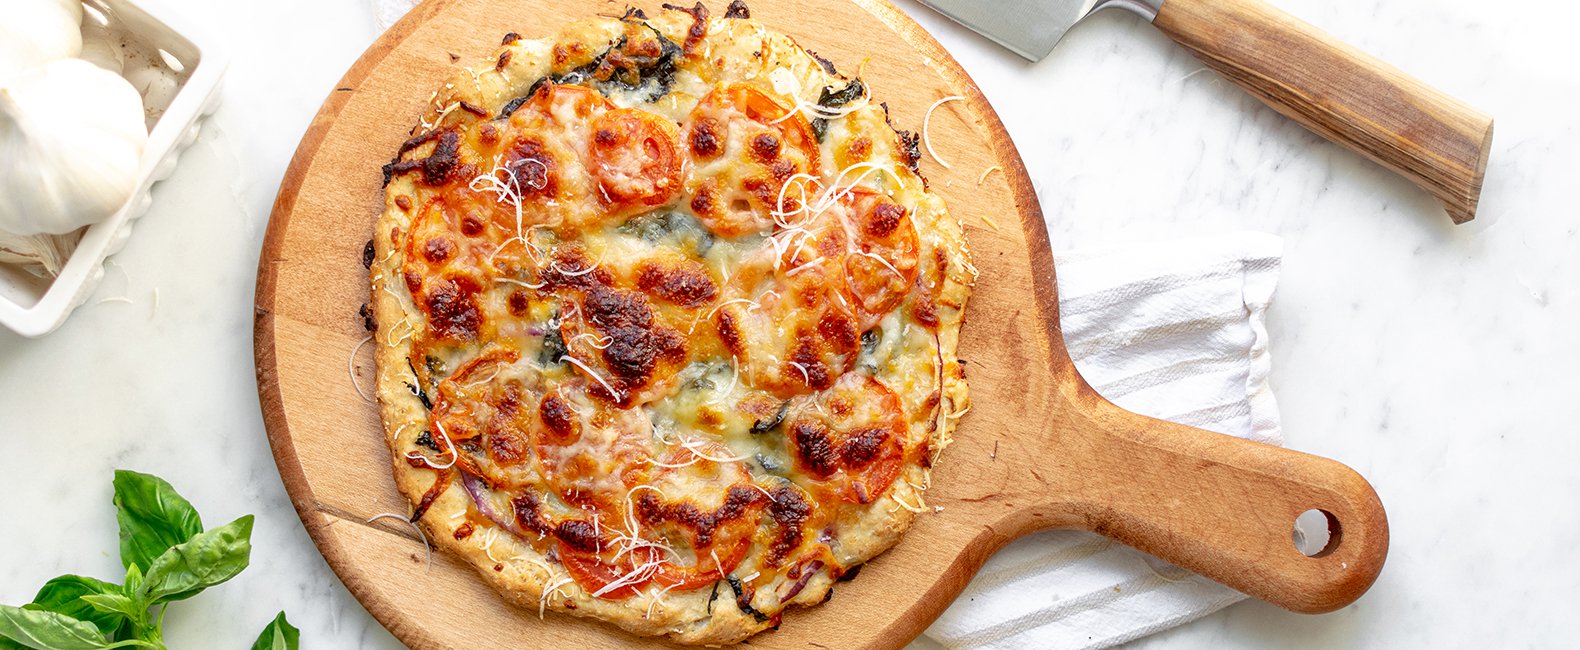 Garden Pizzas Recipe | Quaker Oats